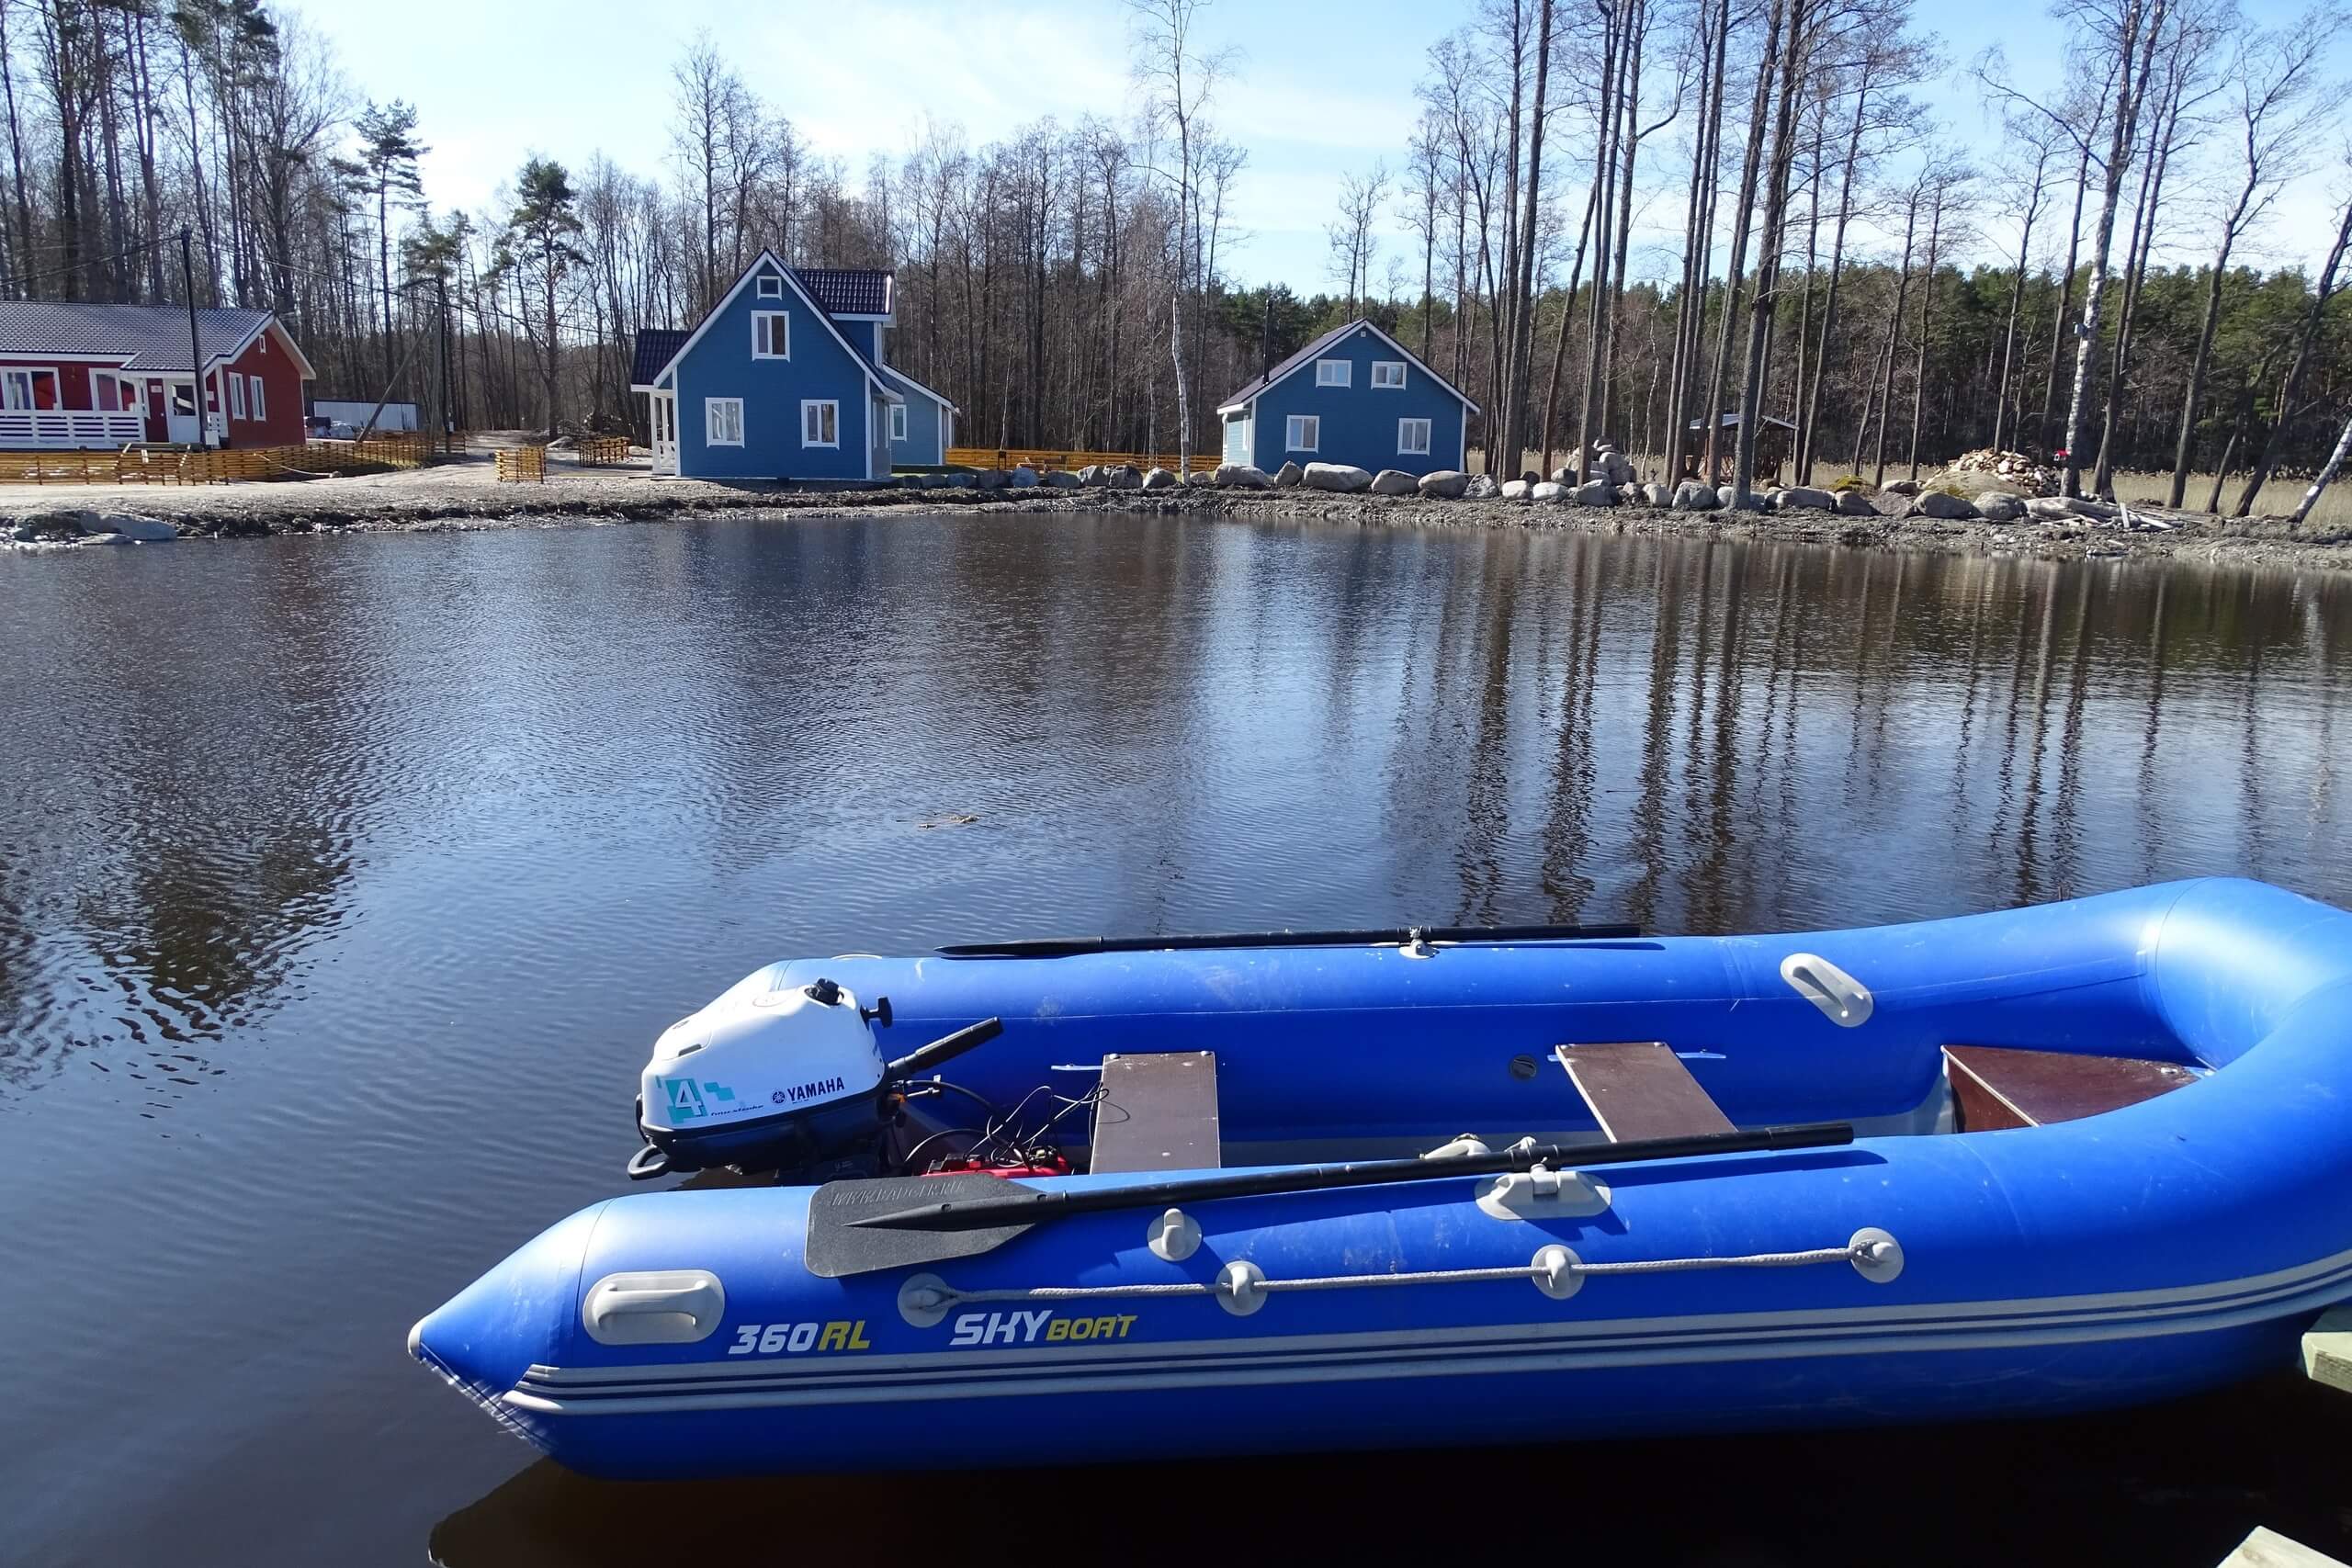 Домики на берегу и синяя надувная лодка с мотором.